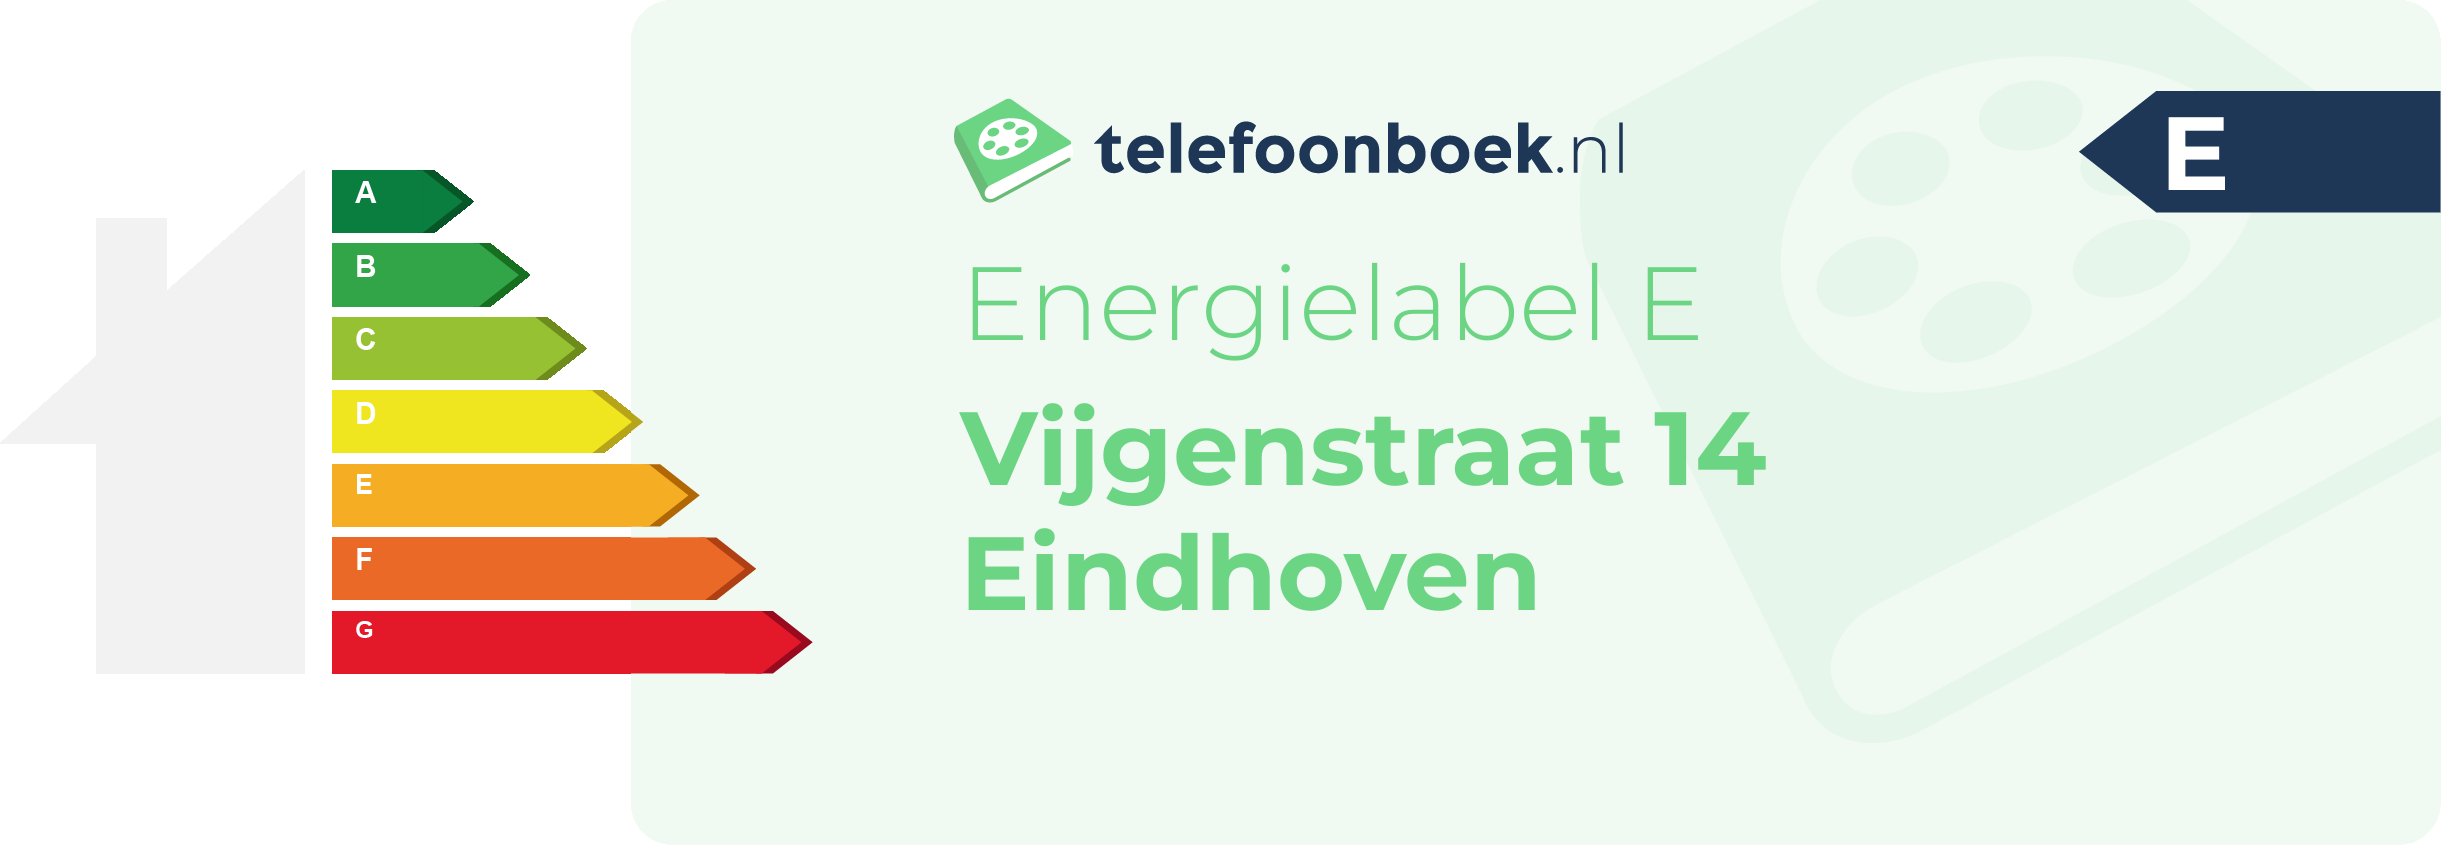 Energielabel Vijgenstraat 14 Eindhoven